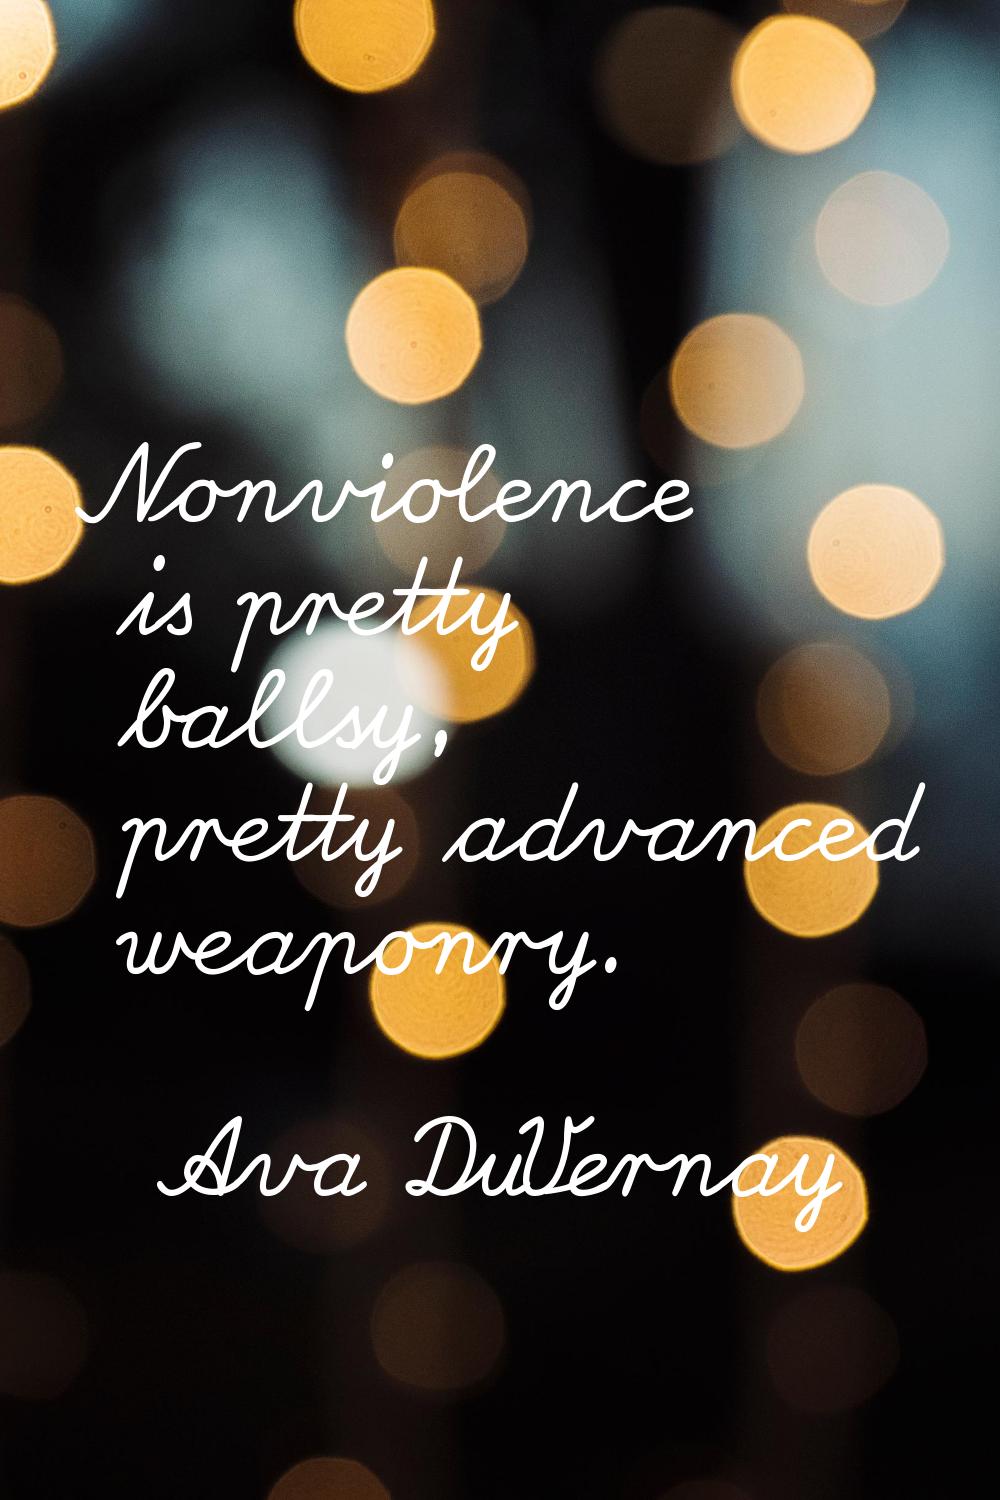 Nonviolence is pretty ballsy, pretty advanced weaponry.